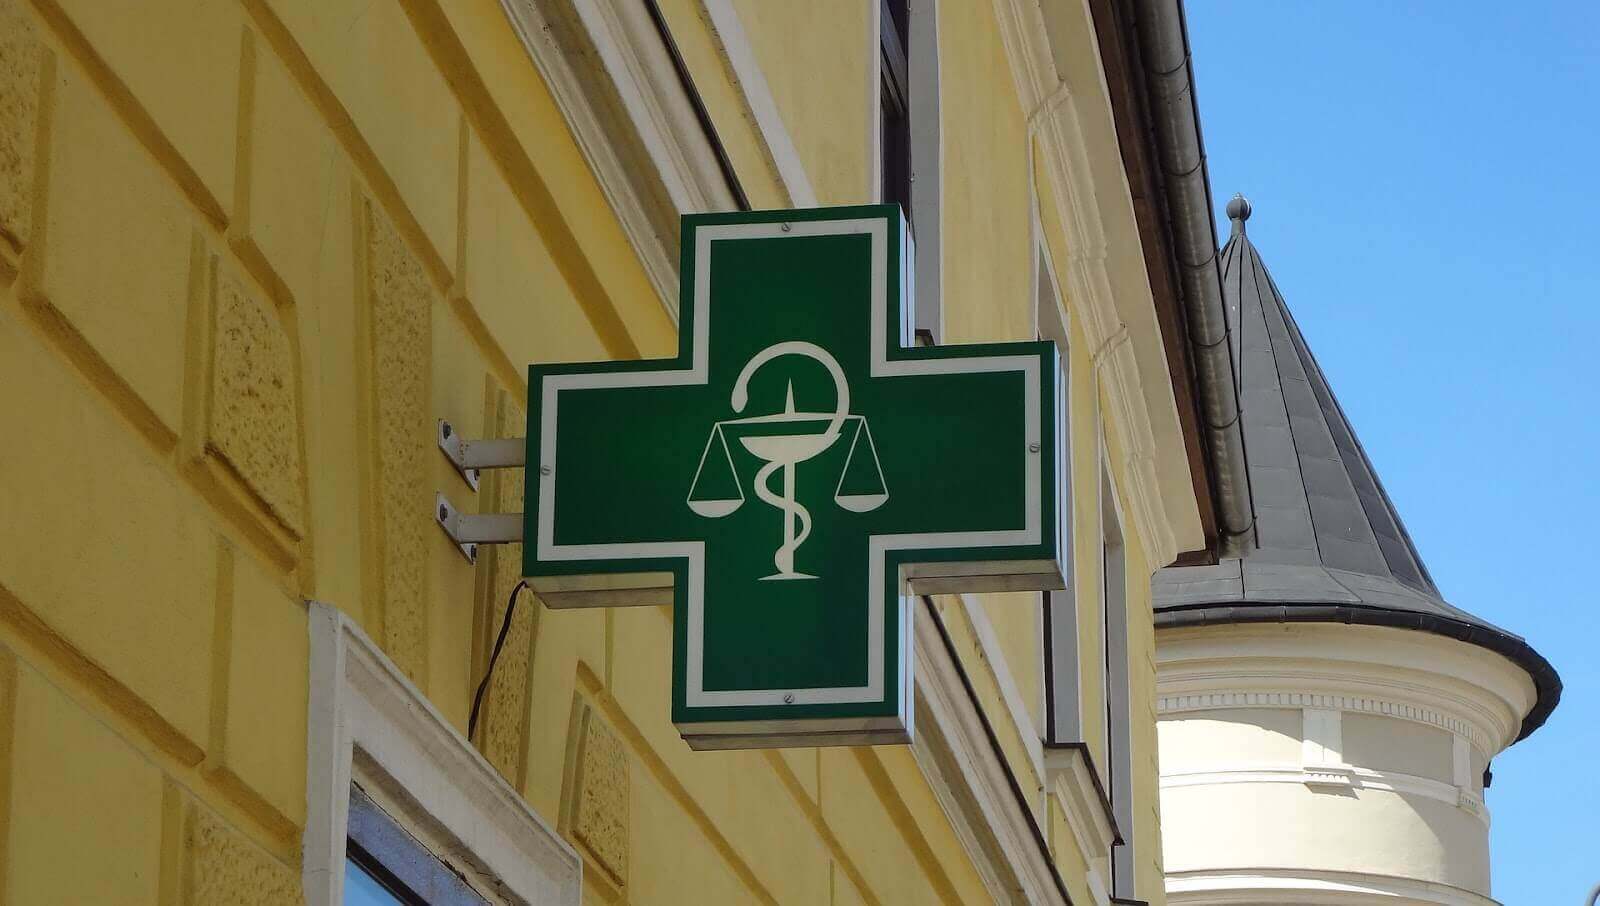 Placa verde em formato de cruz com logo da farmácia